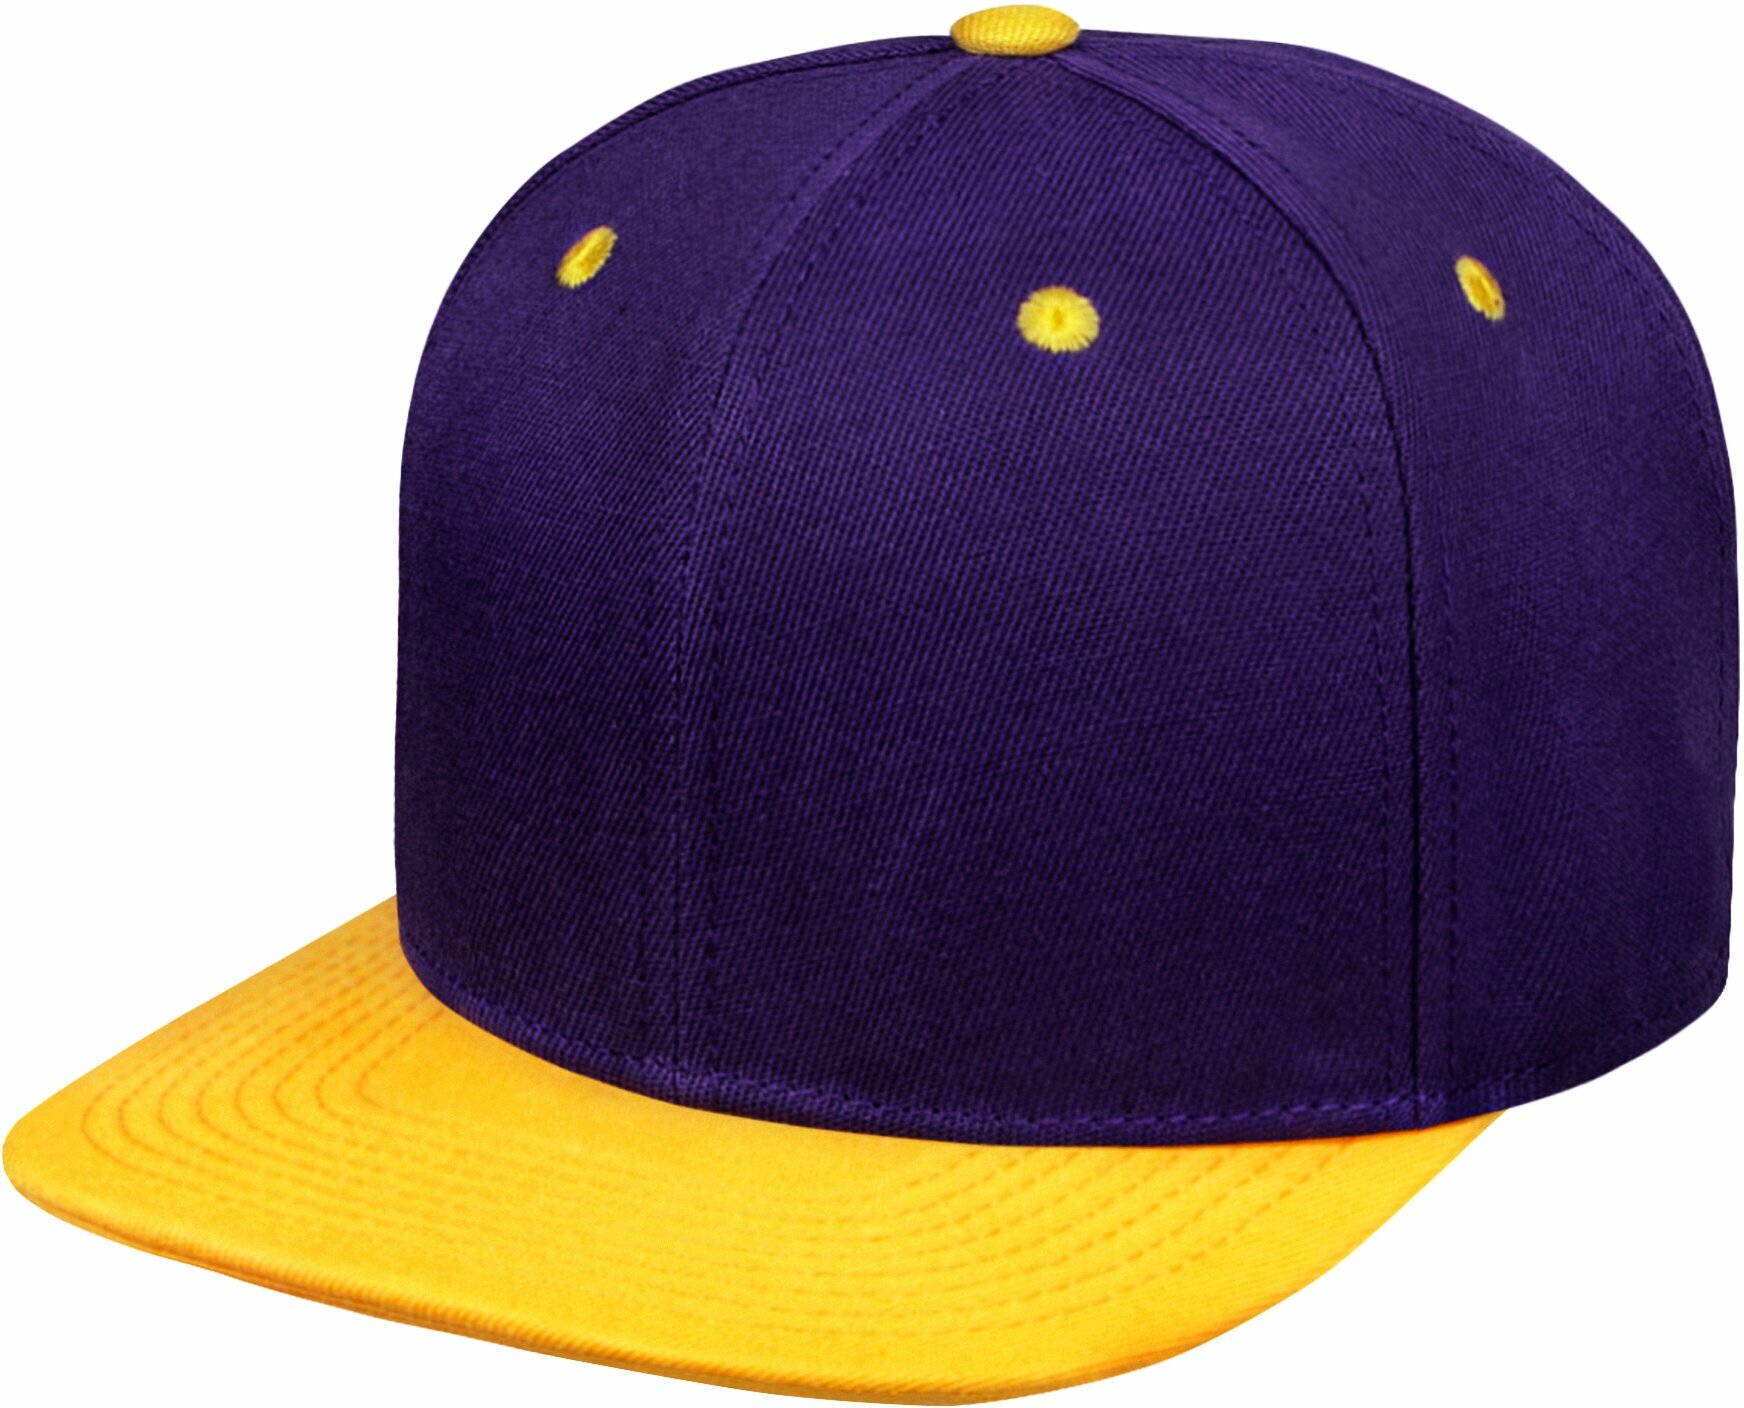 Бейсболка / Street Caps / 004-6-2-017-025A Шестипанельная двухцветная акриловая / фиолетовый с жёлтым козырьком